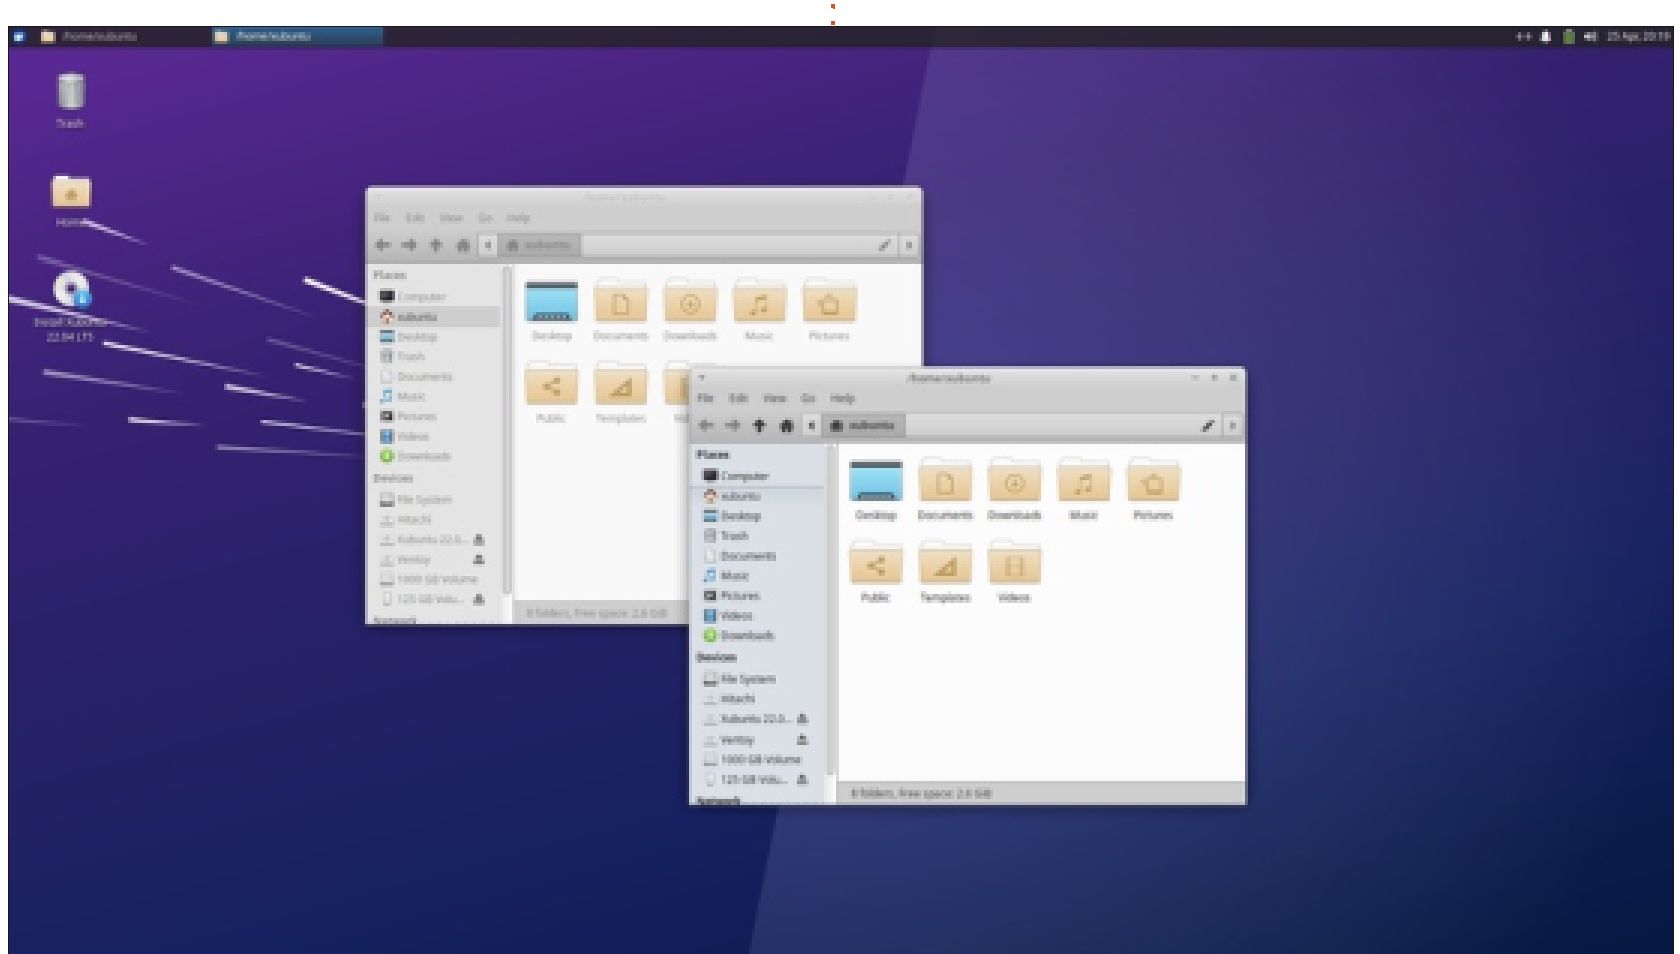 Xubuntu 22.04 LTS Review